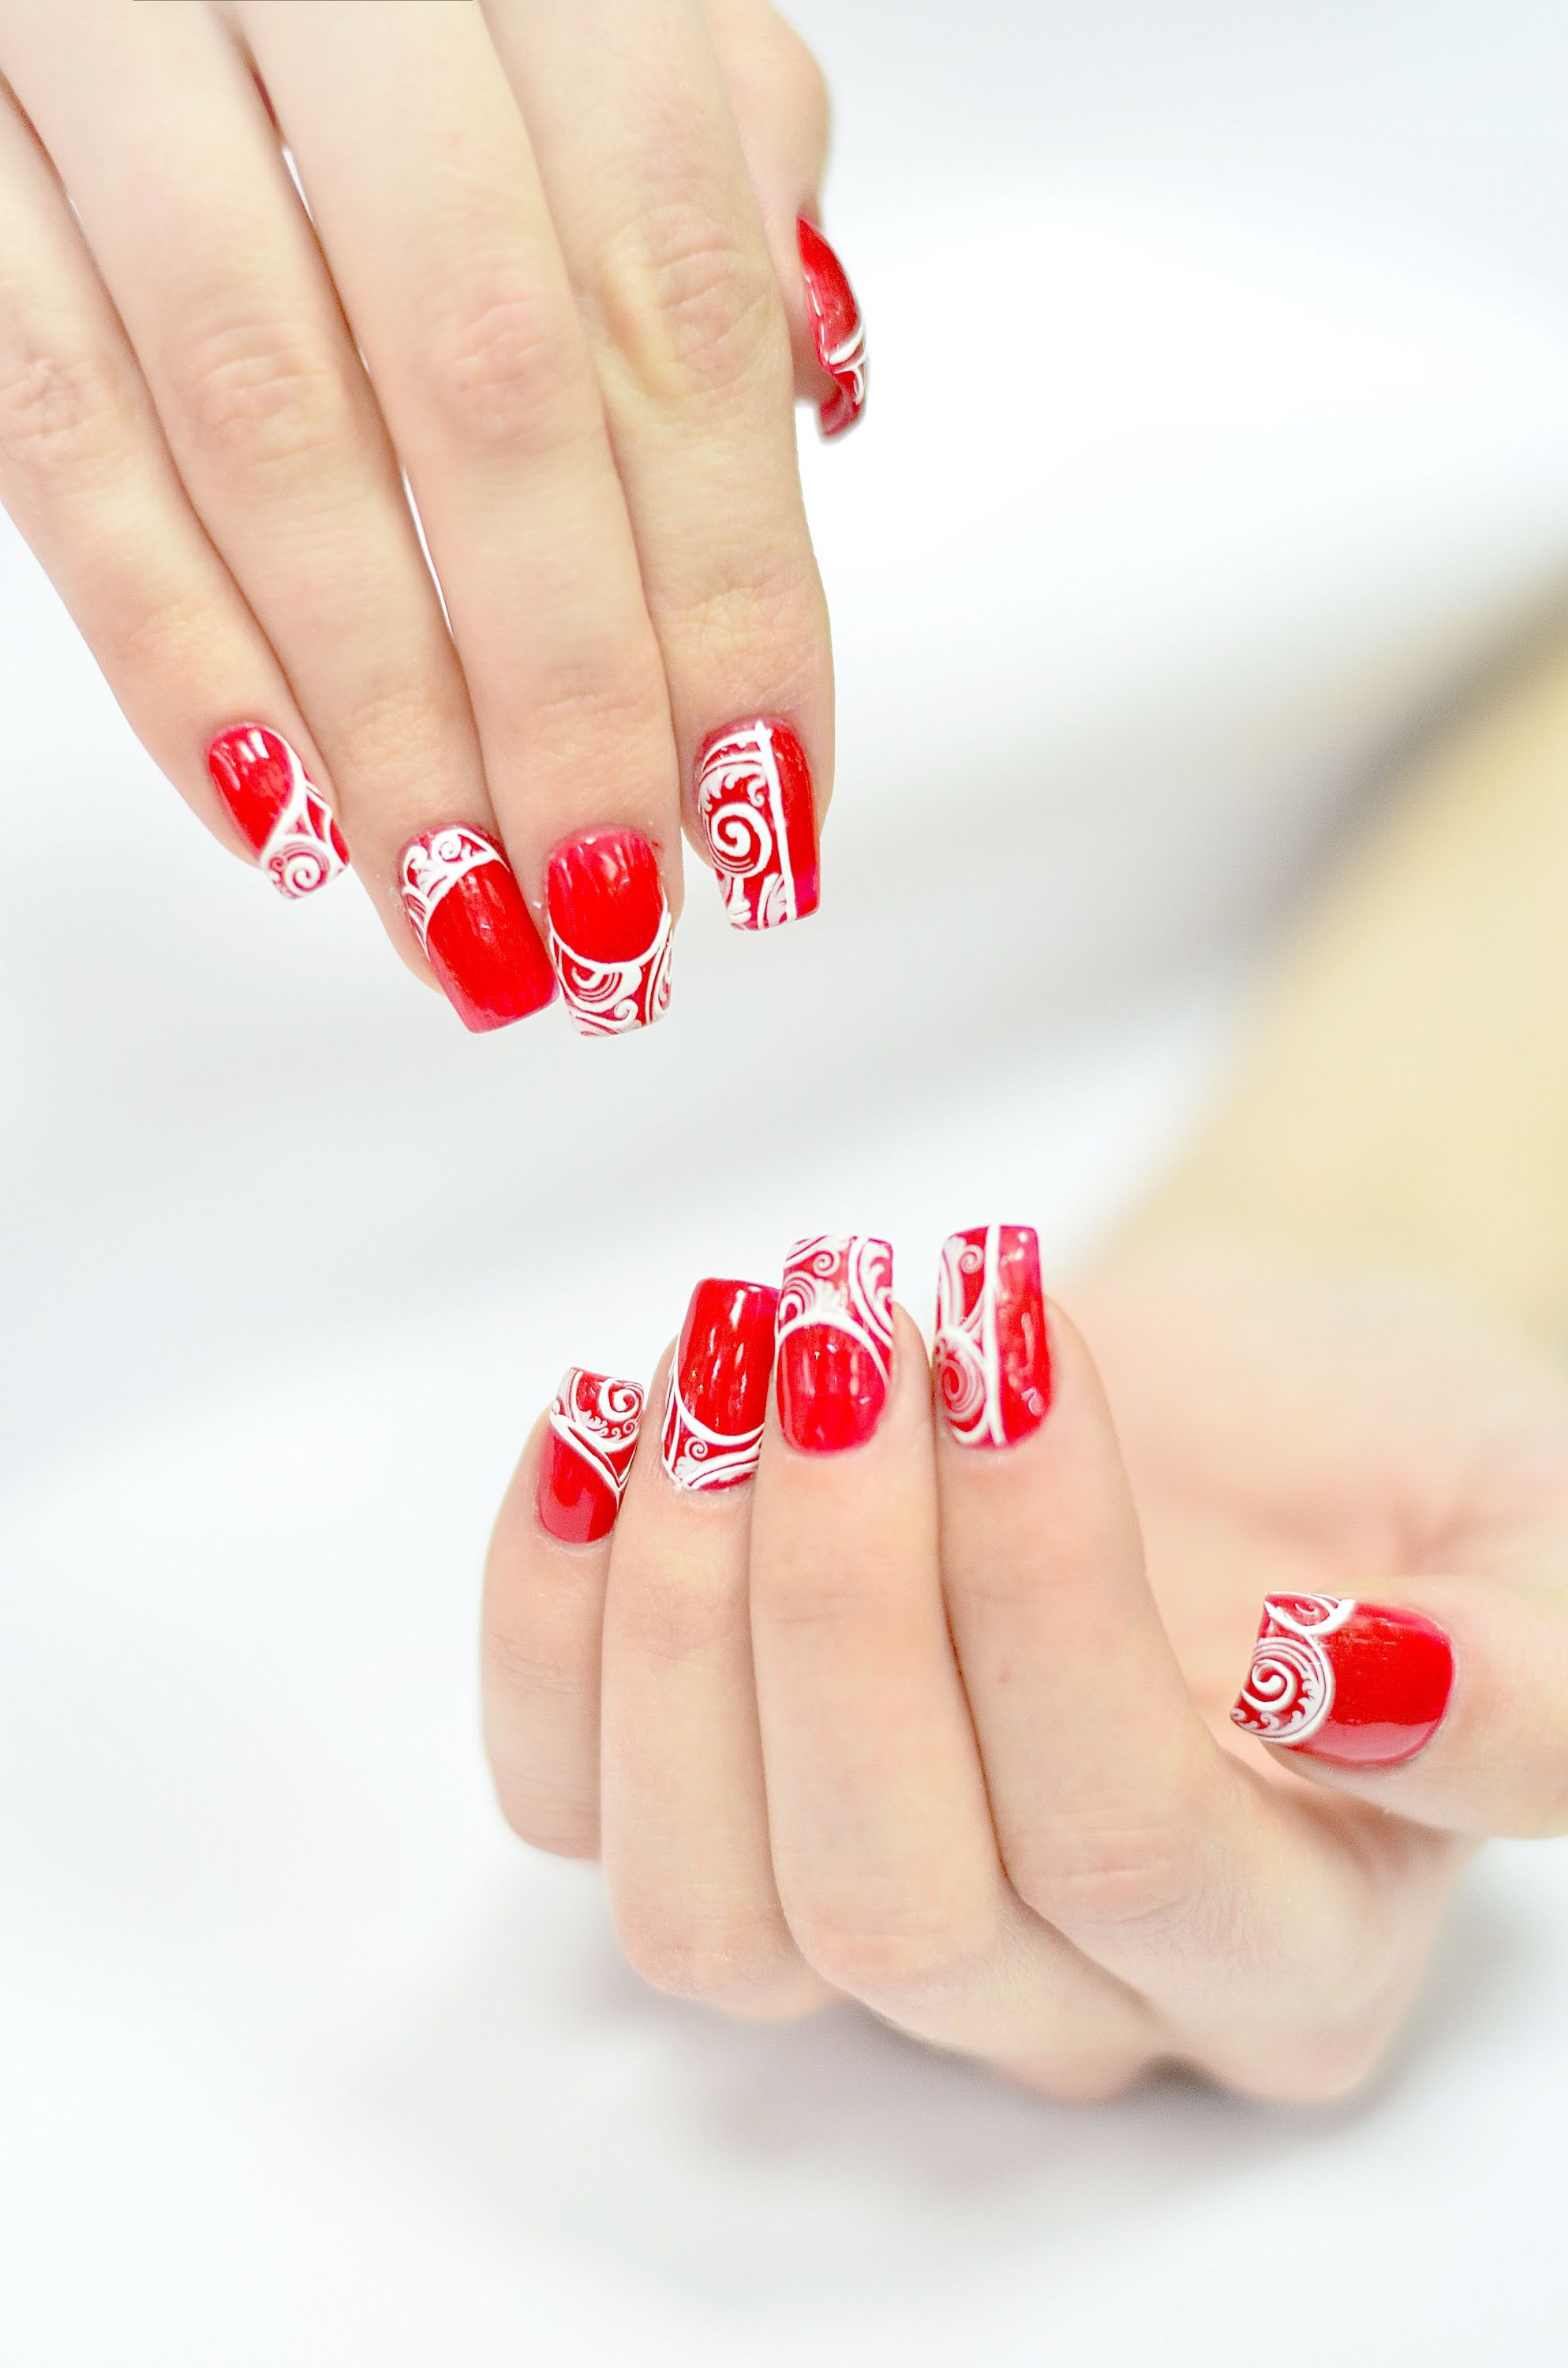 Nägel lackieren in rot - ein Klassiker bei Manicure